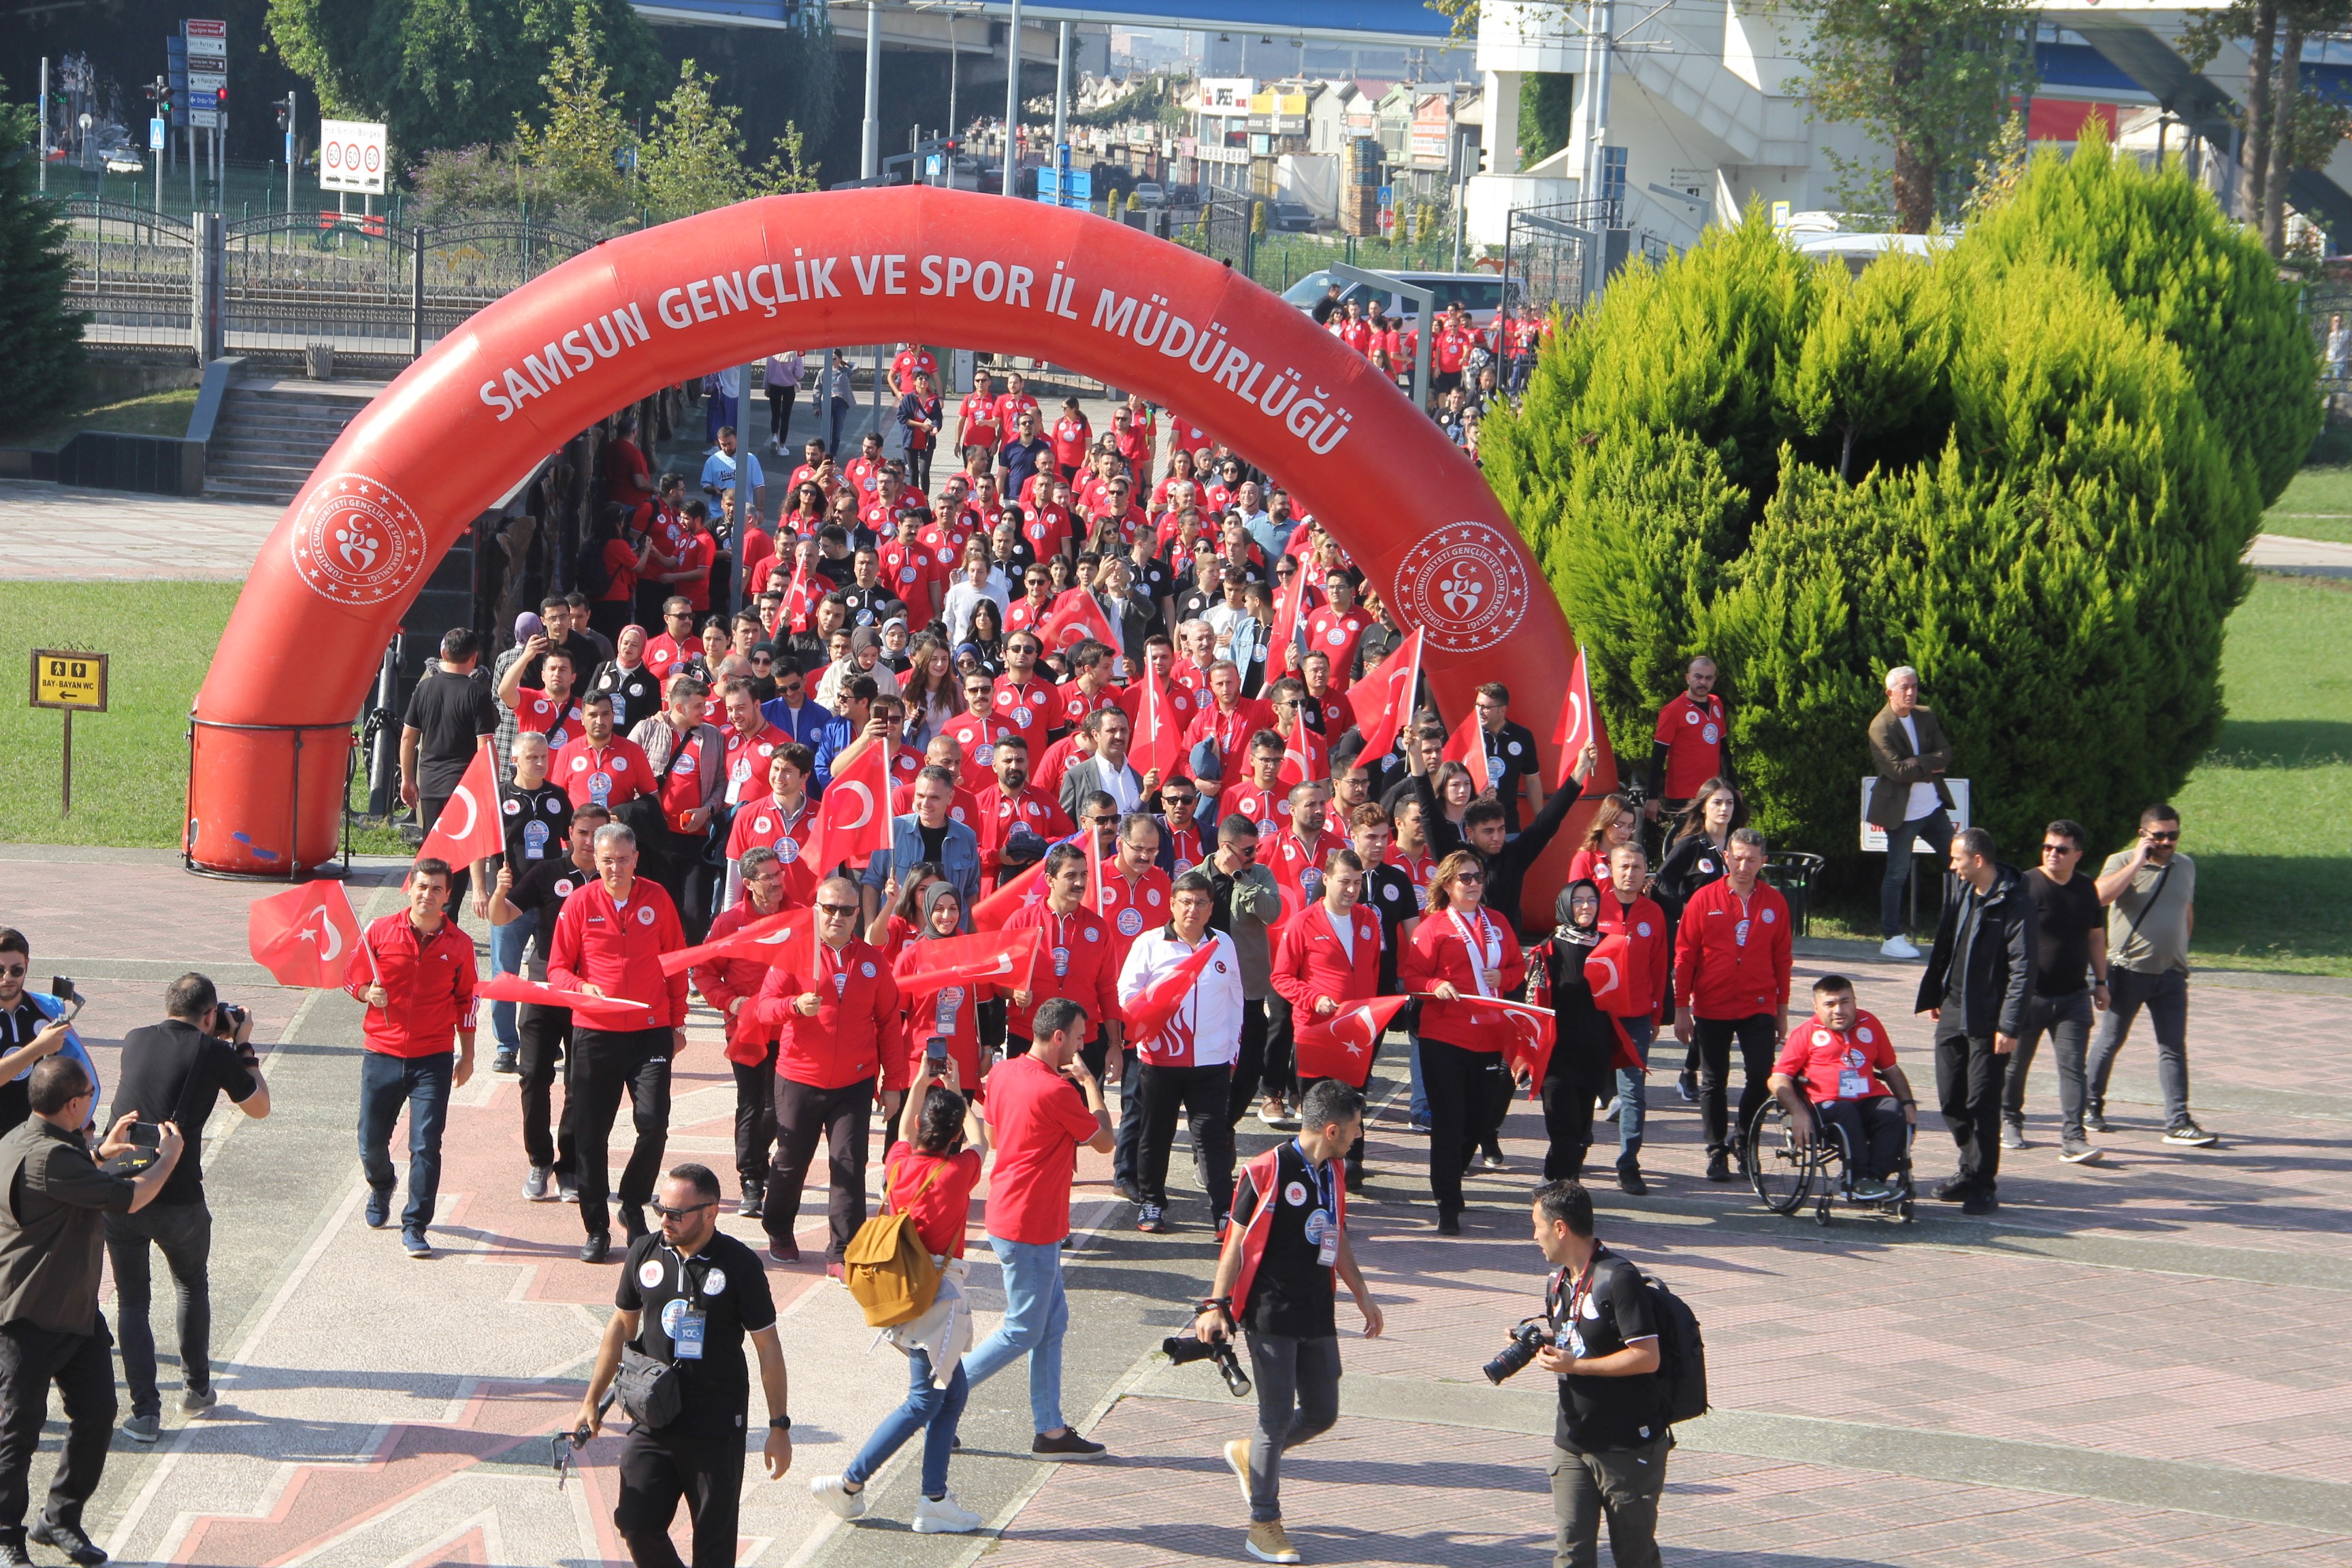 Samsun’da 100. Yıl Adalet Spor Oyunları sona erdi